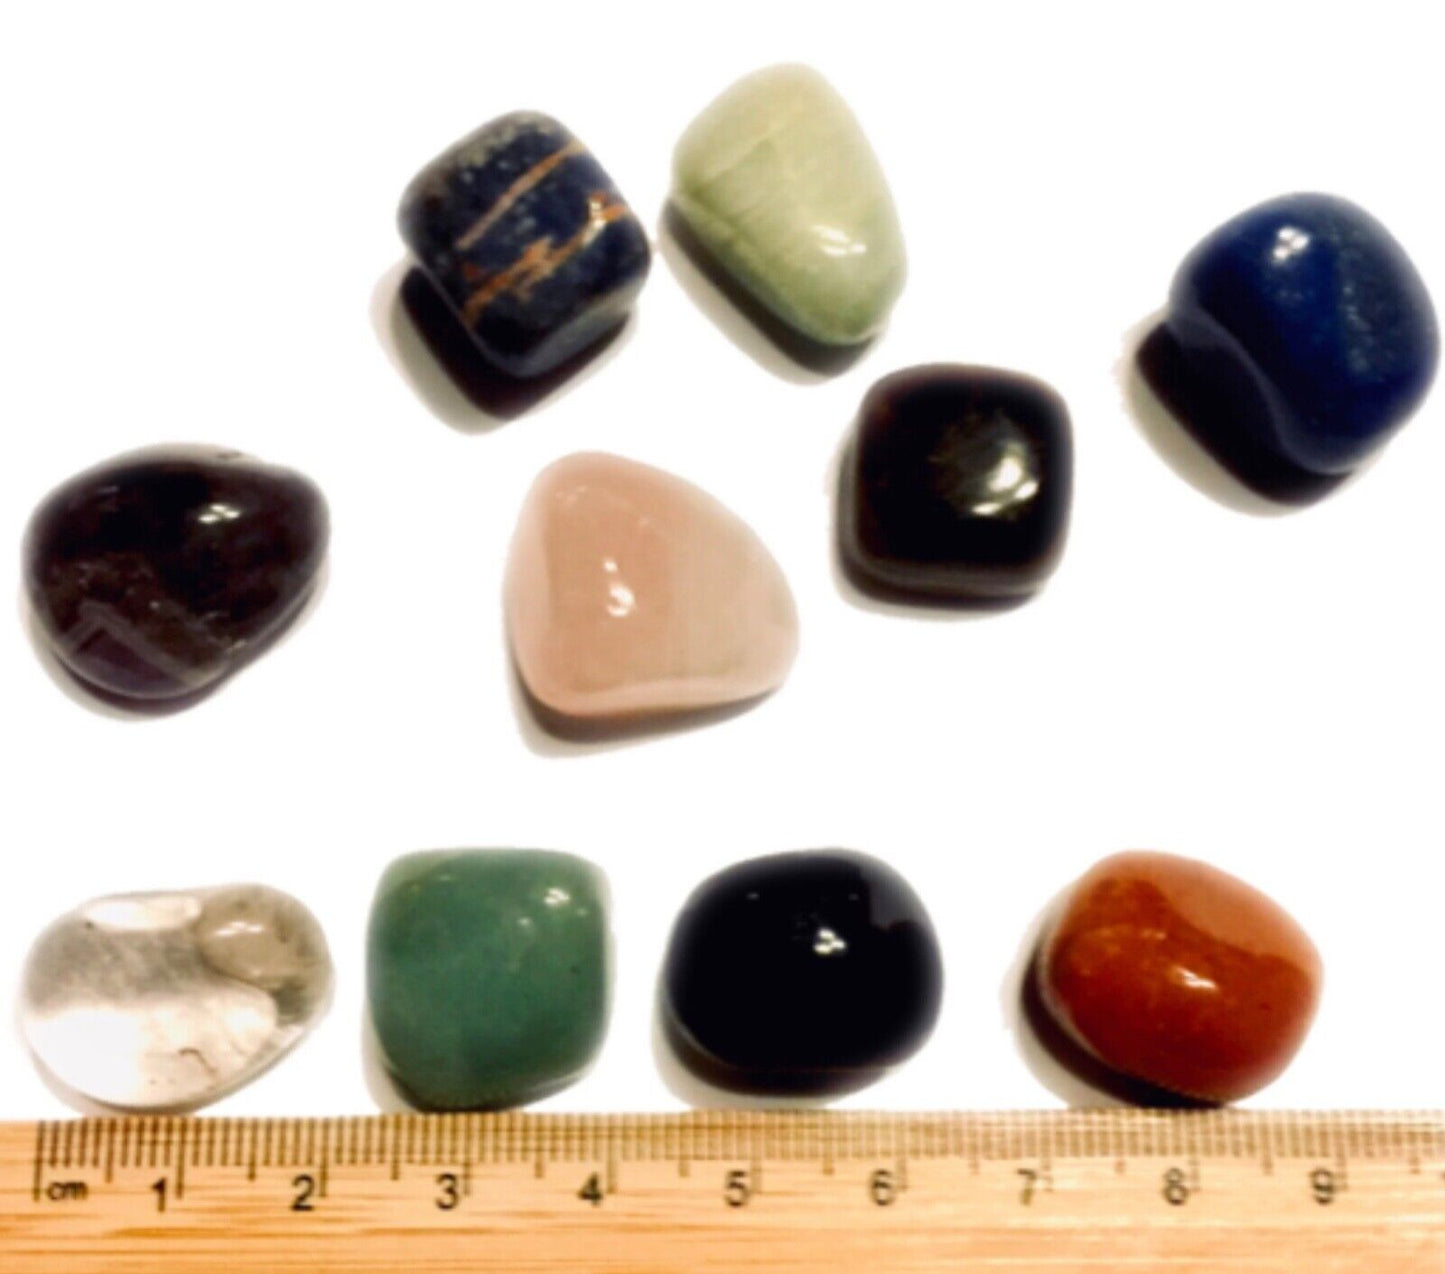 12 pcs Large Natural Crystal No Hole 12mm to 18mm Semi Precious Tumble Gemstones